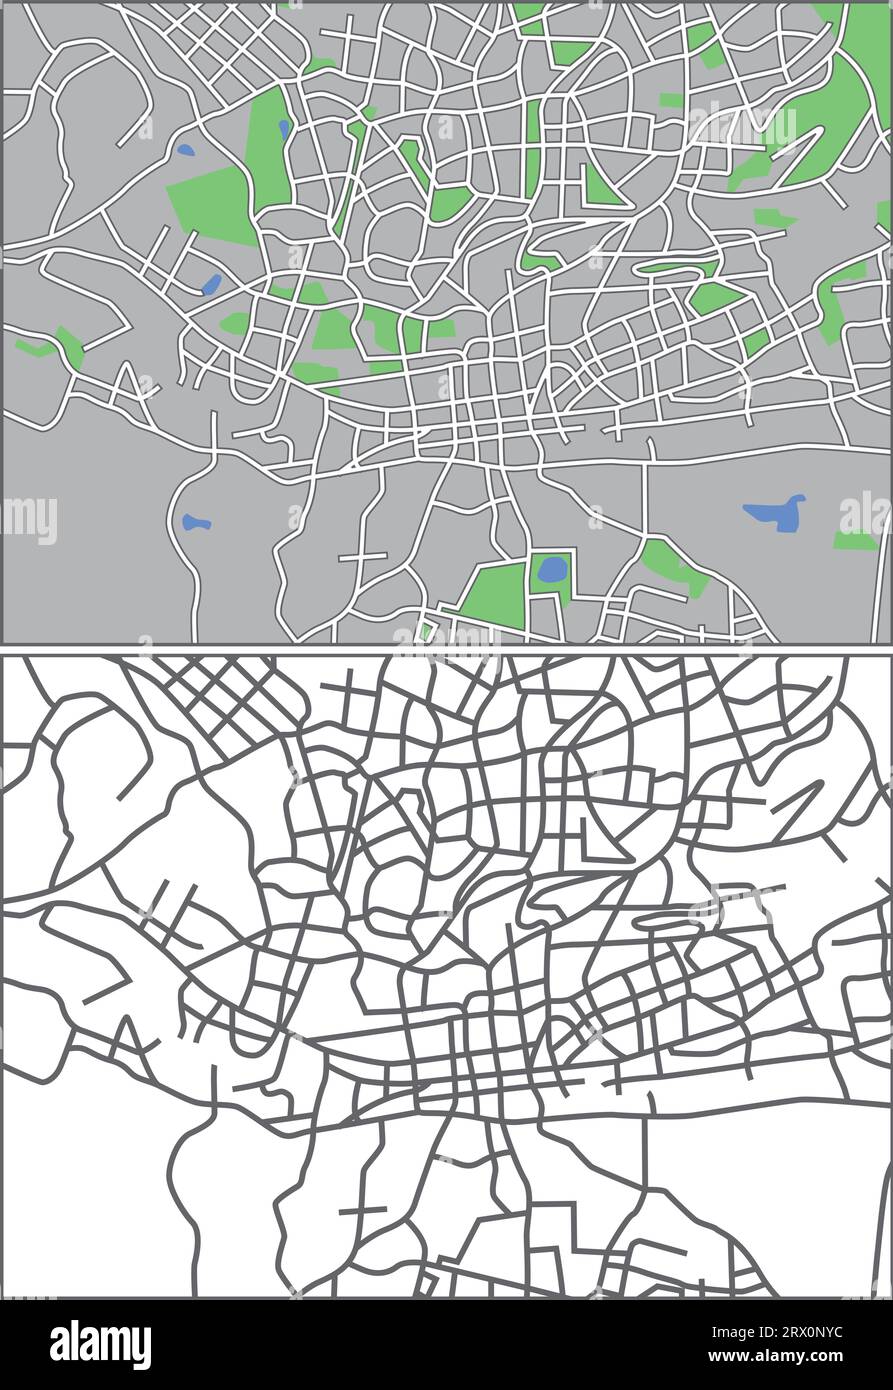 Mappa vettoriale a più livelli modificabile di Johannesburg, Sudafrica, che contiene linee e forme colorate per terre, strade, laghi e parchi. Illustrazione Vettoriale